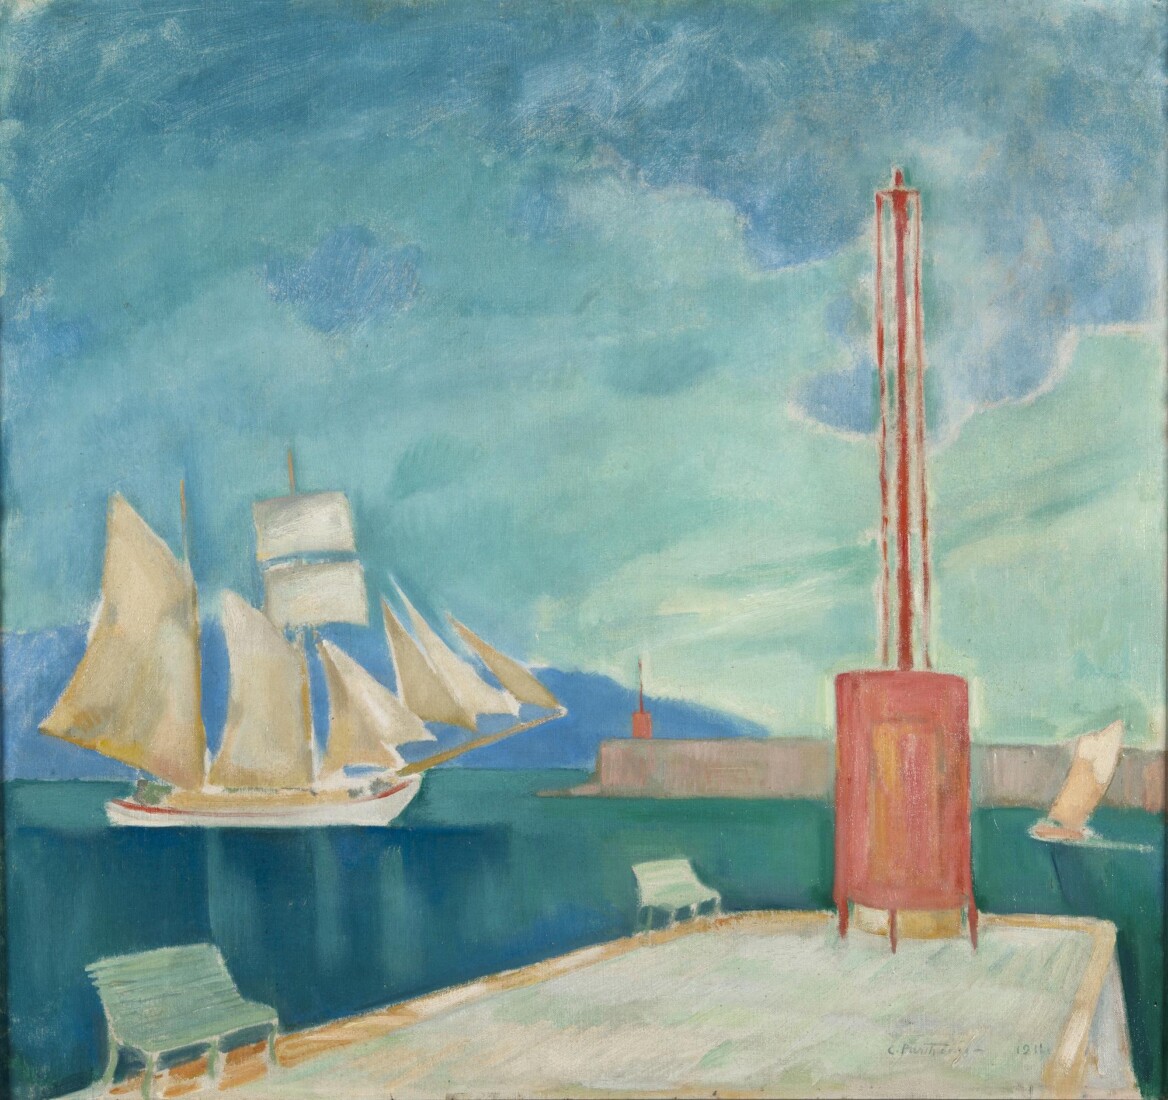 Κωνσταντίνος  Παρθένης (1878/1879 - 1967) Το λιμάνι της Καλαμάτας, 1911